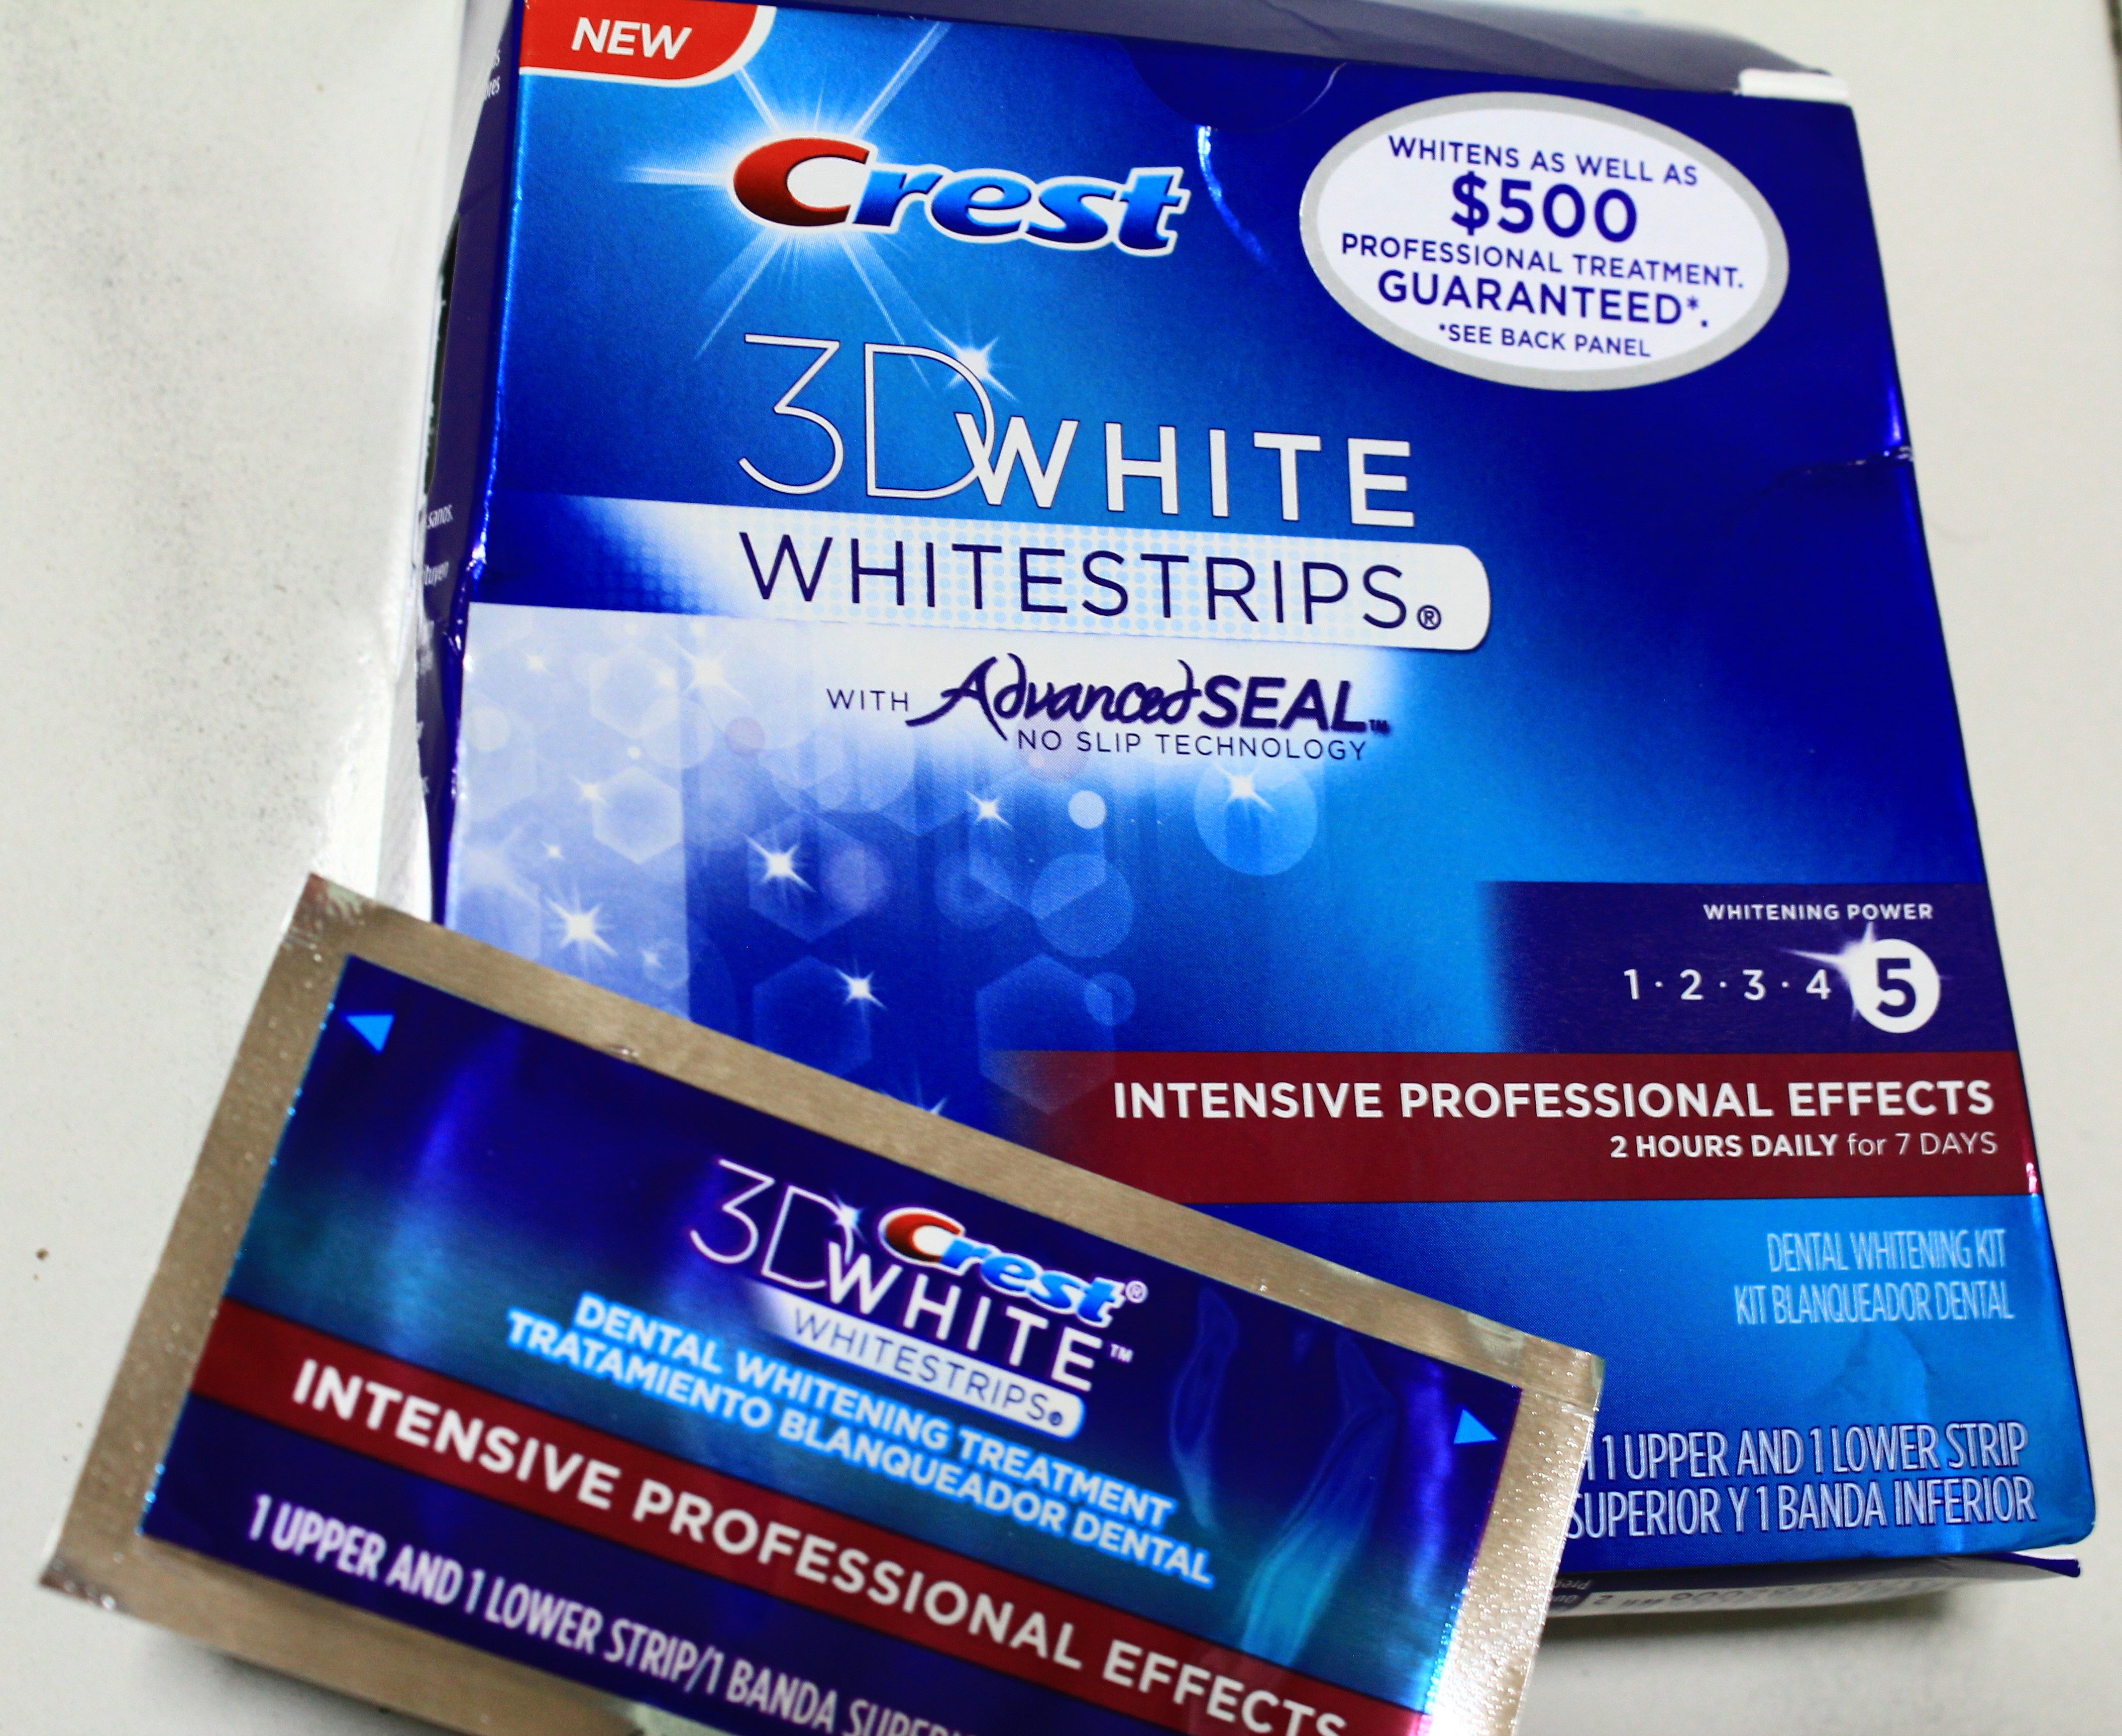 Miếng dán làm trắng răng Crest Whitestrips được phân phối và sử dụng tại Mỹ hơn 10 năm nay